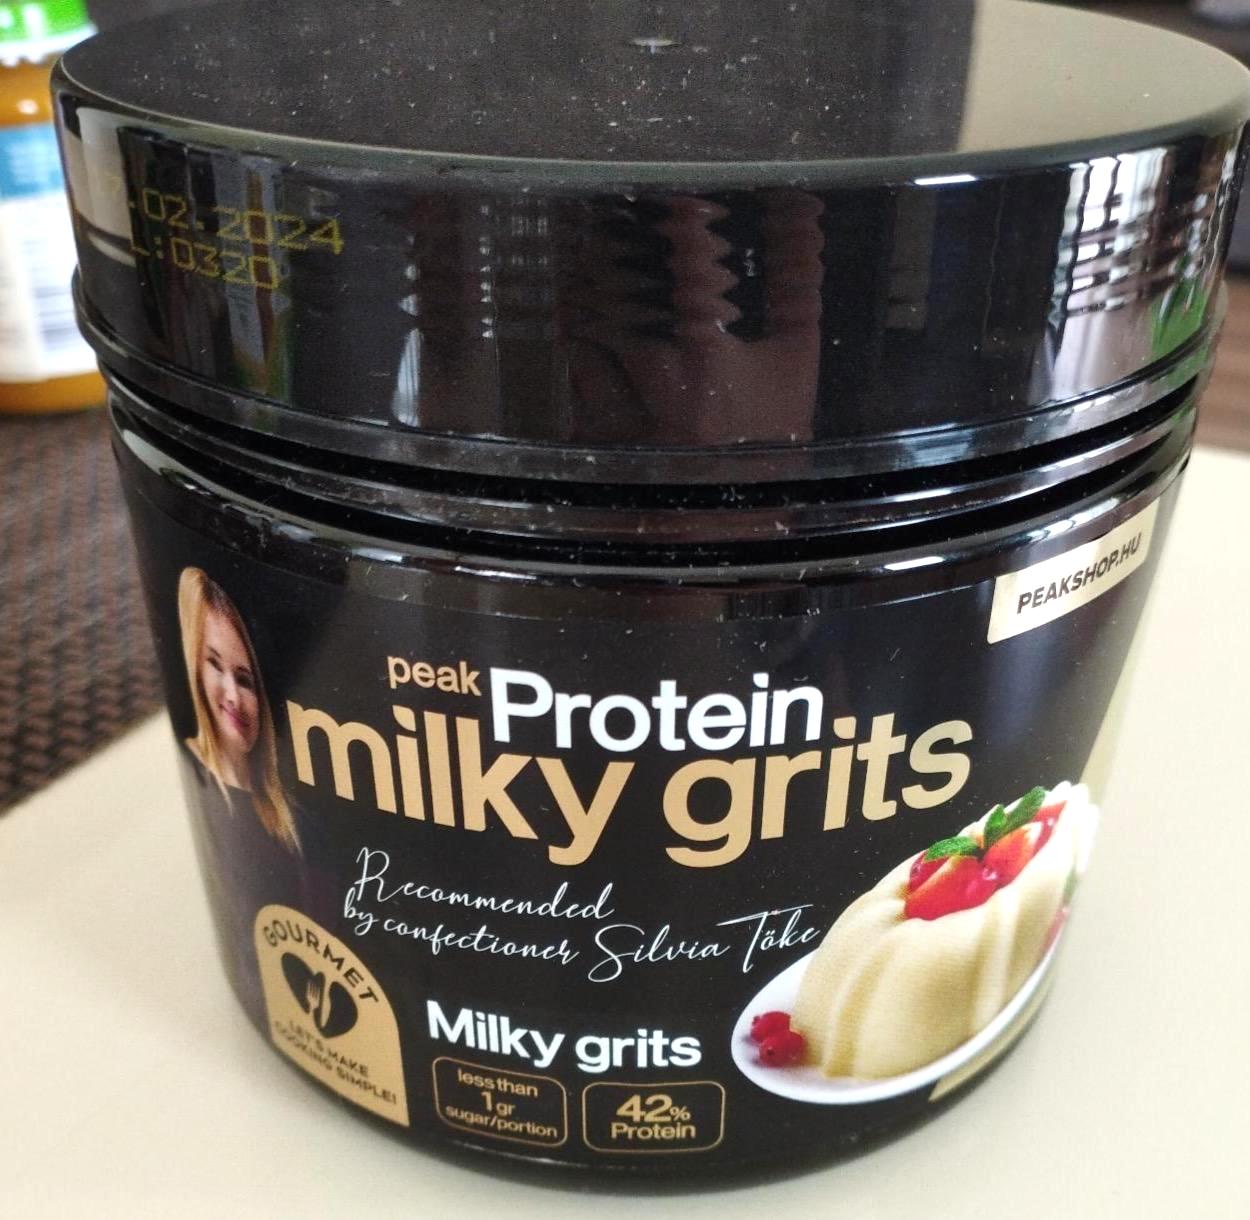 Képek - Protein milky grits Peak